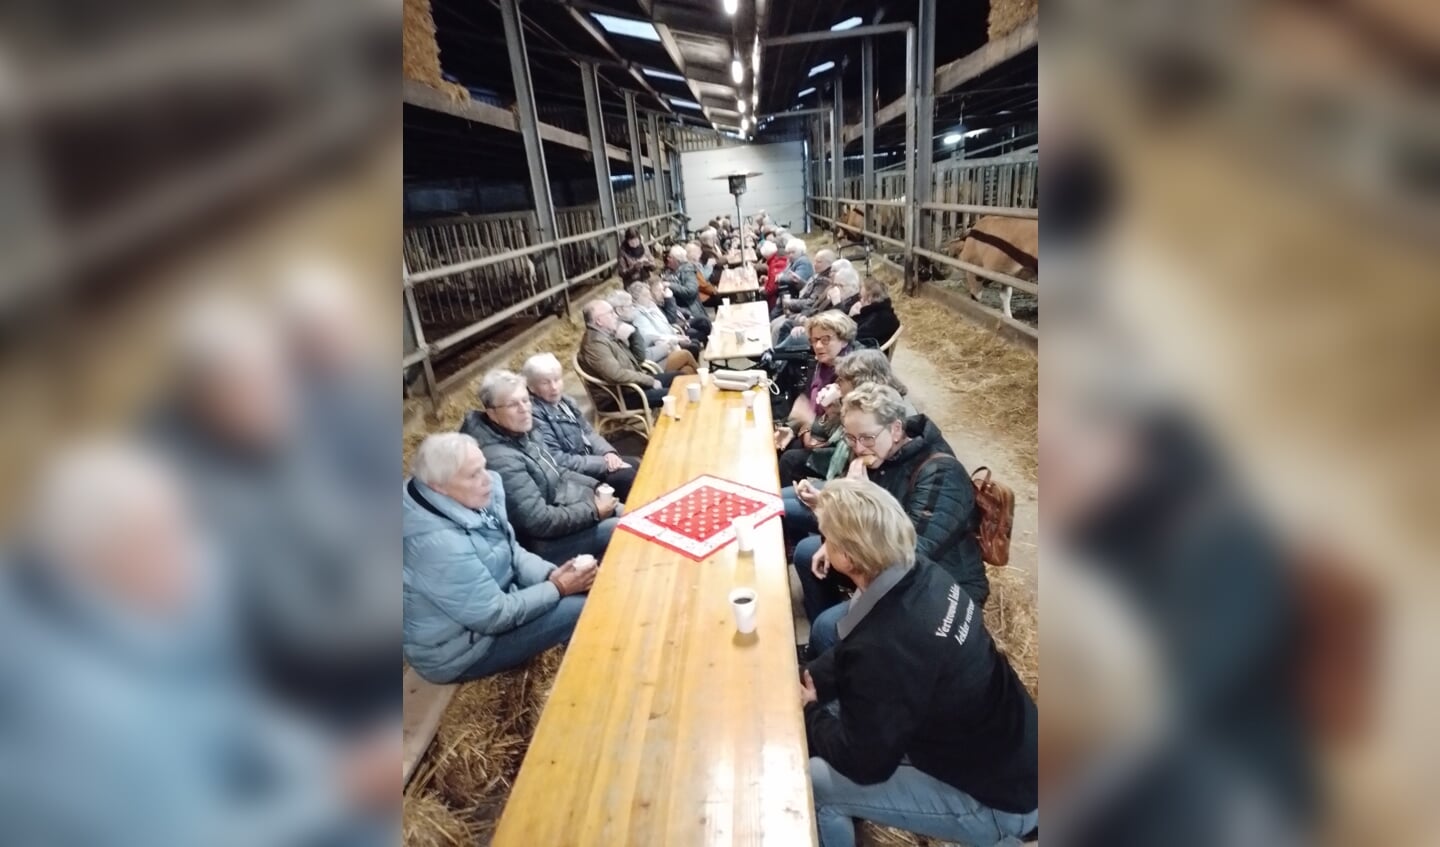 De stal was ingericht met tafels en banken en iedereen zat hier tussen de koeien die het allemaal wel goed vonden en er weinig aandacht aan schonken. Foto: PR